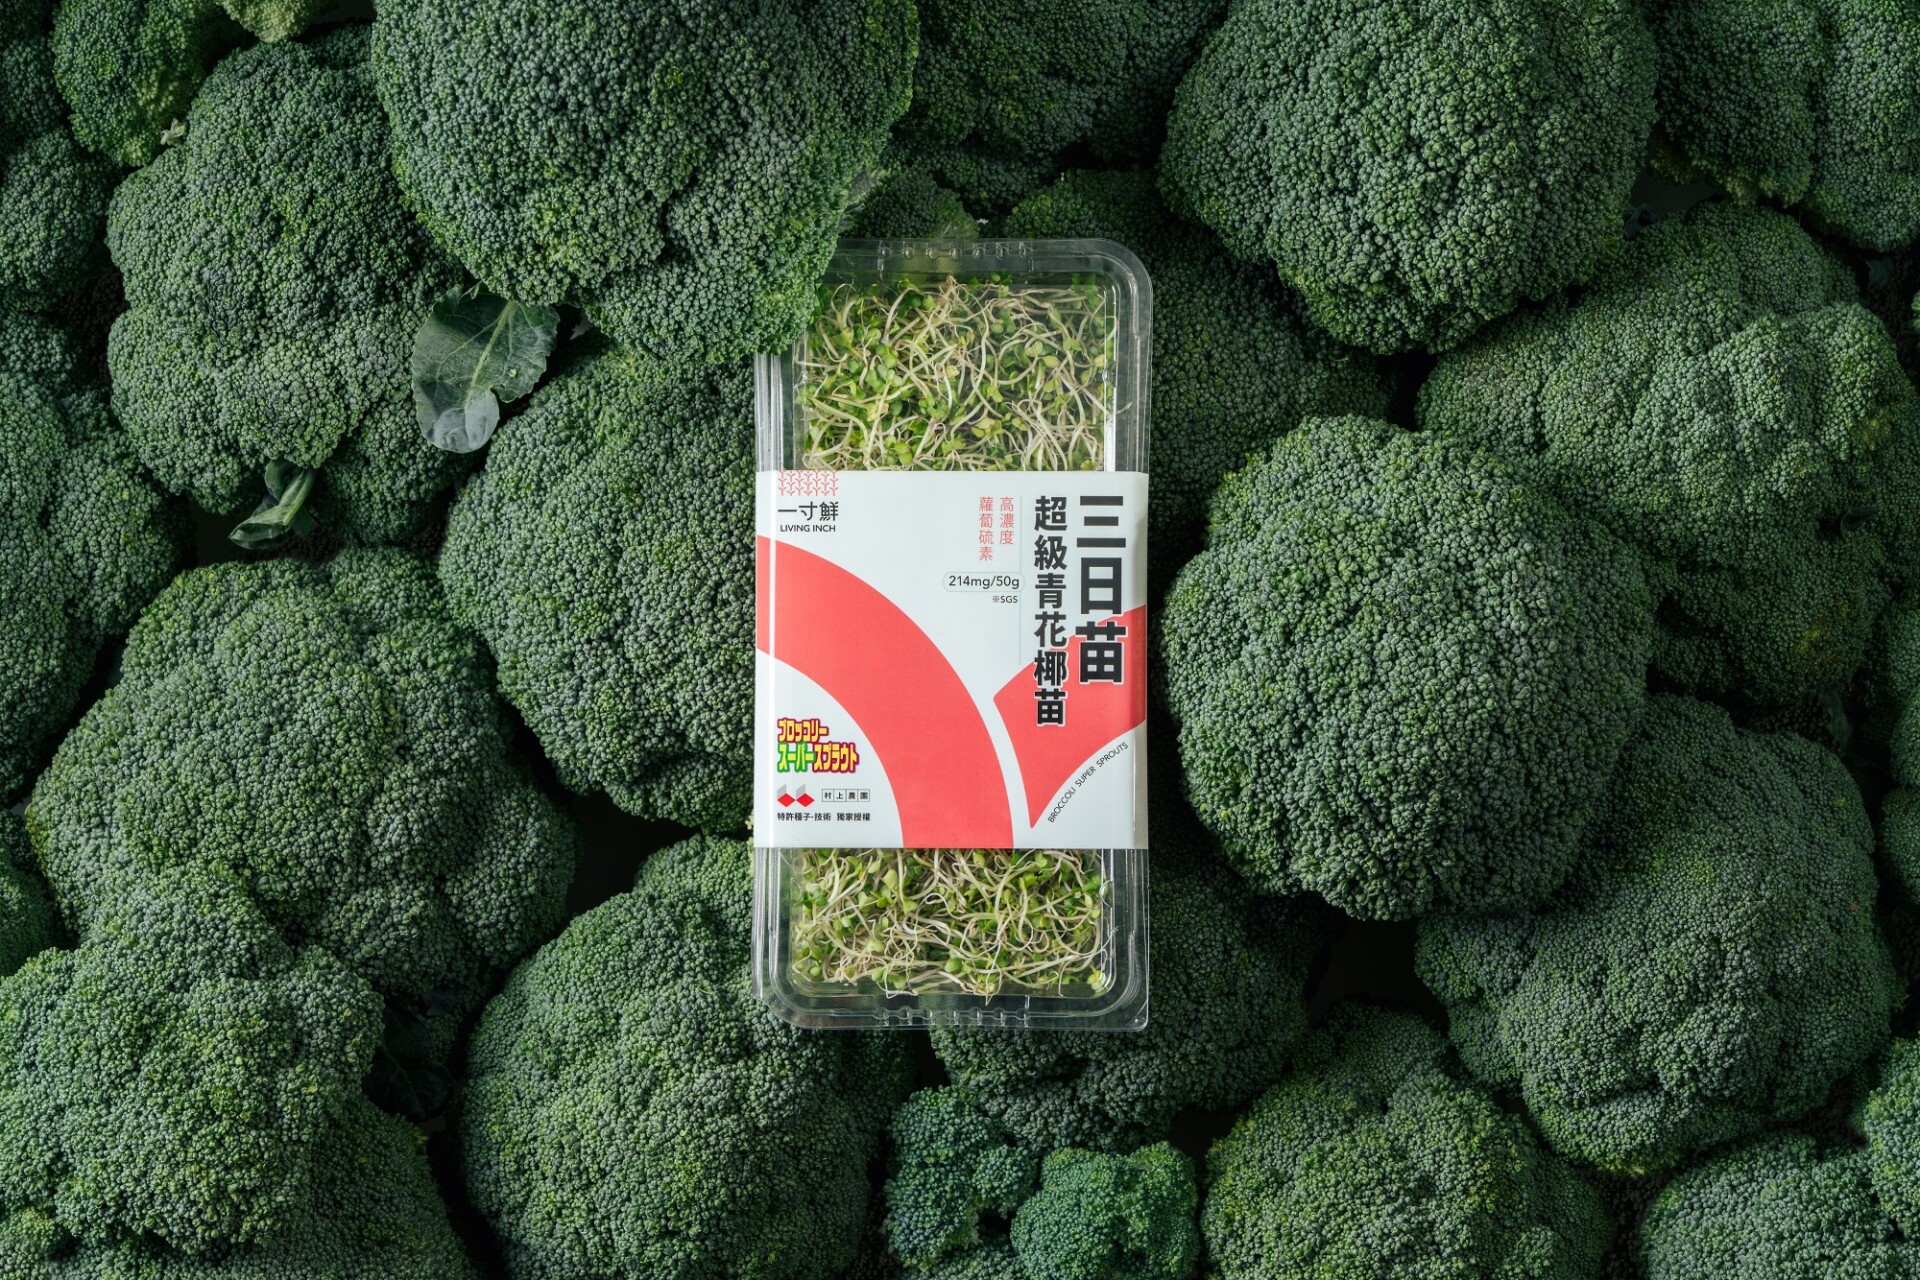 圖二：綠藤推出高營養蔬菜品牌「一寸鮮」-跨日打造「三日苗-超級青花椰苗」-打造由內而外-72-小時長效好氣色。綠藤生機提供